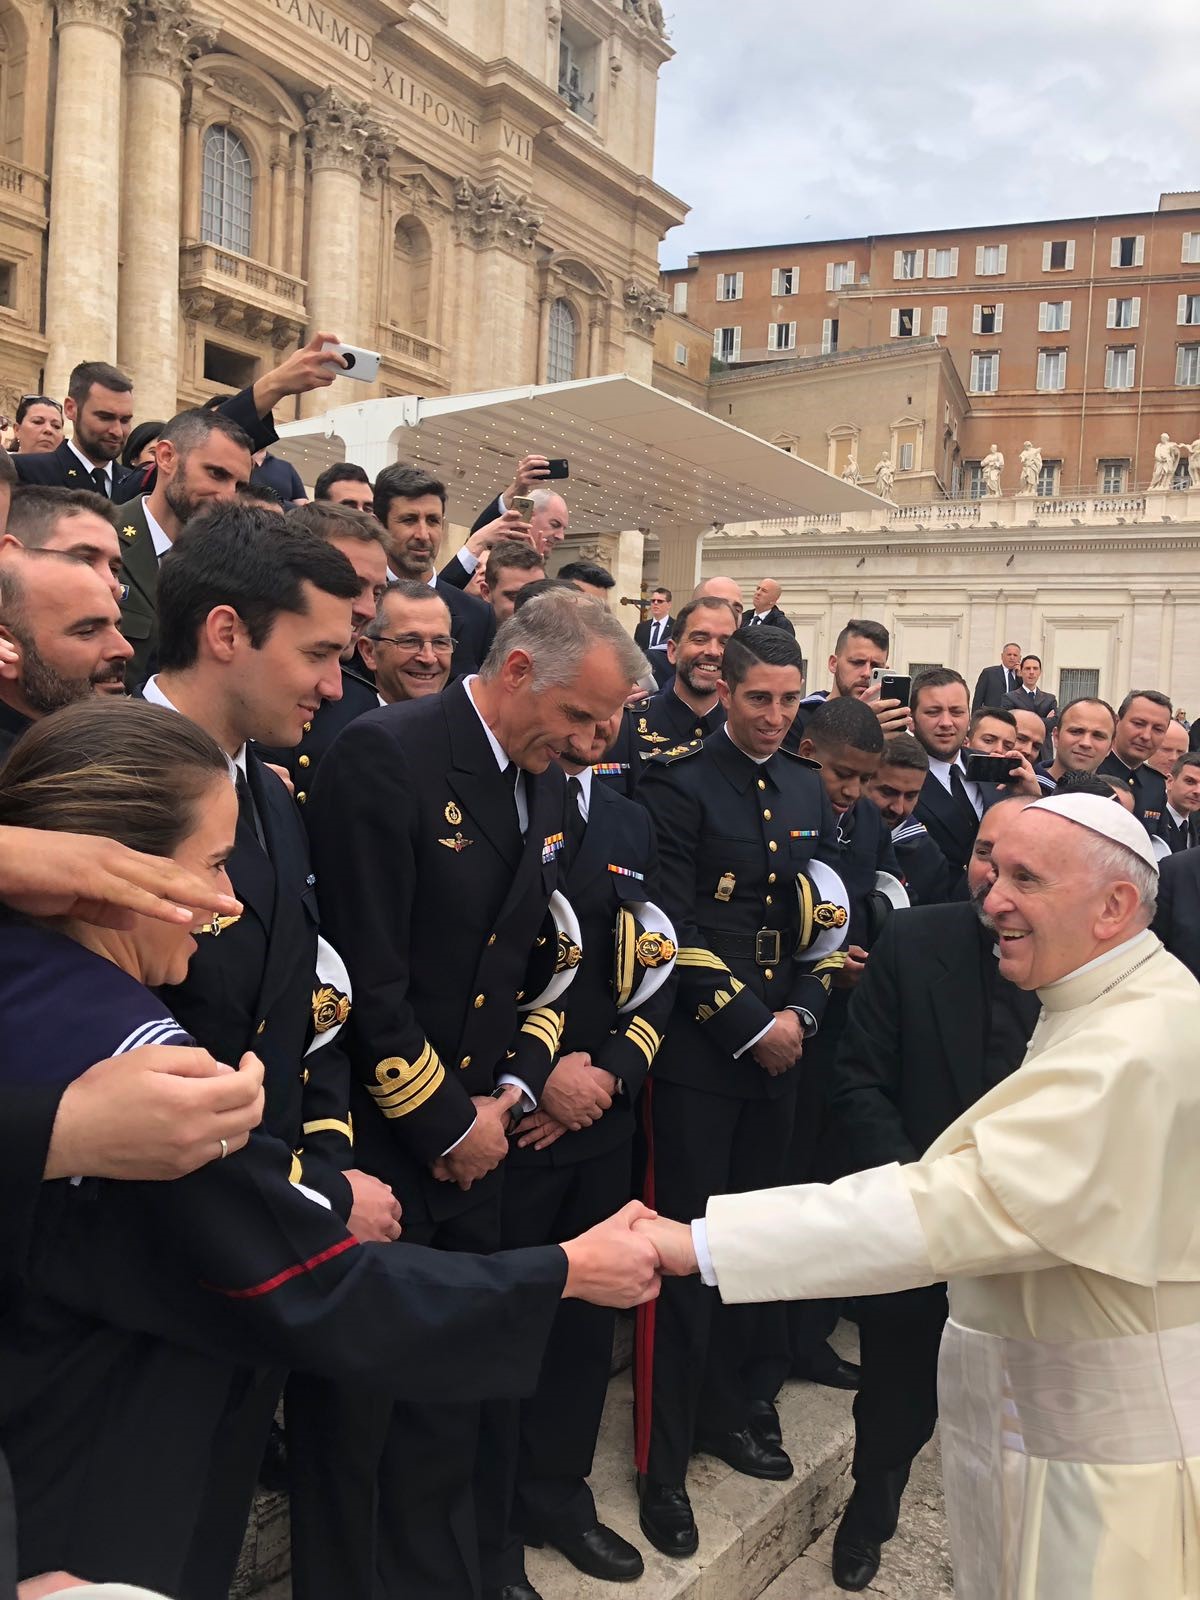 El Papa Francisco agradece de corazón a la fragata “Santa María” su labor en el Mediterráneo